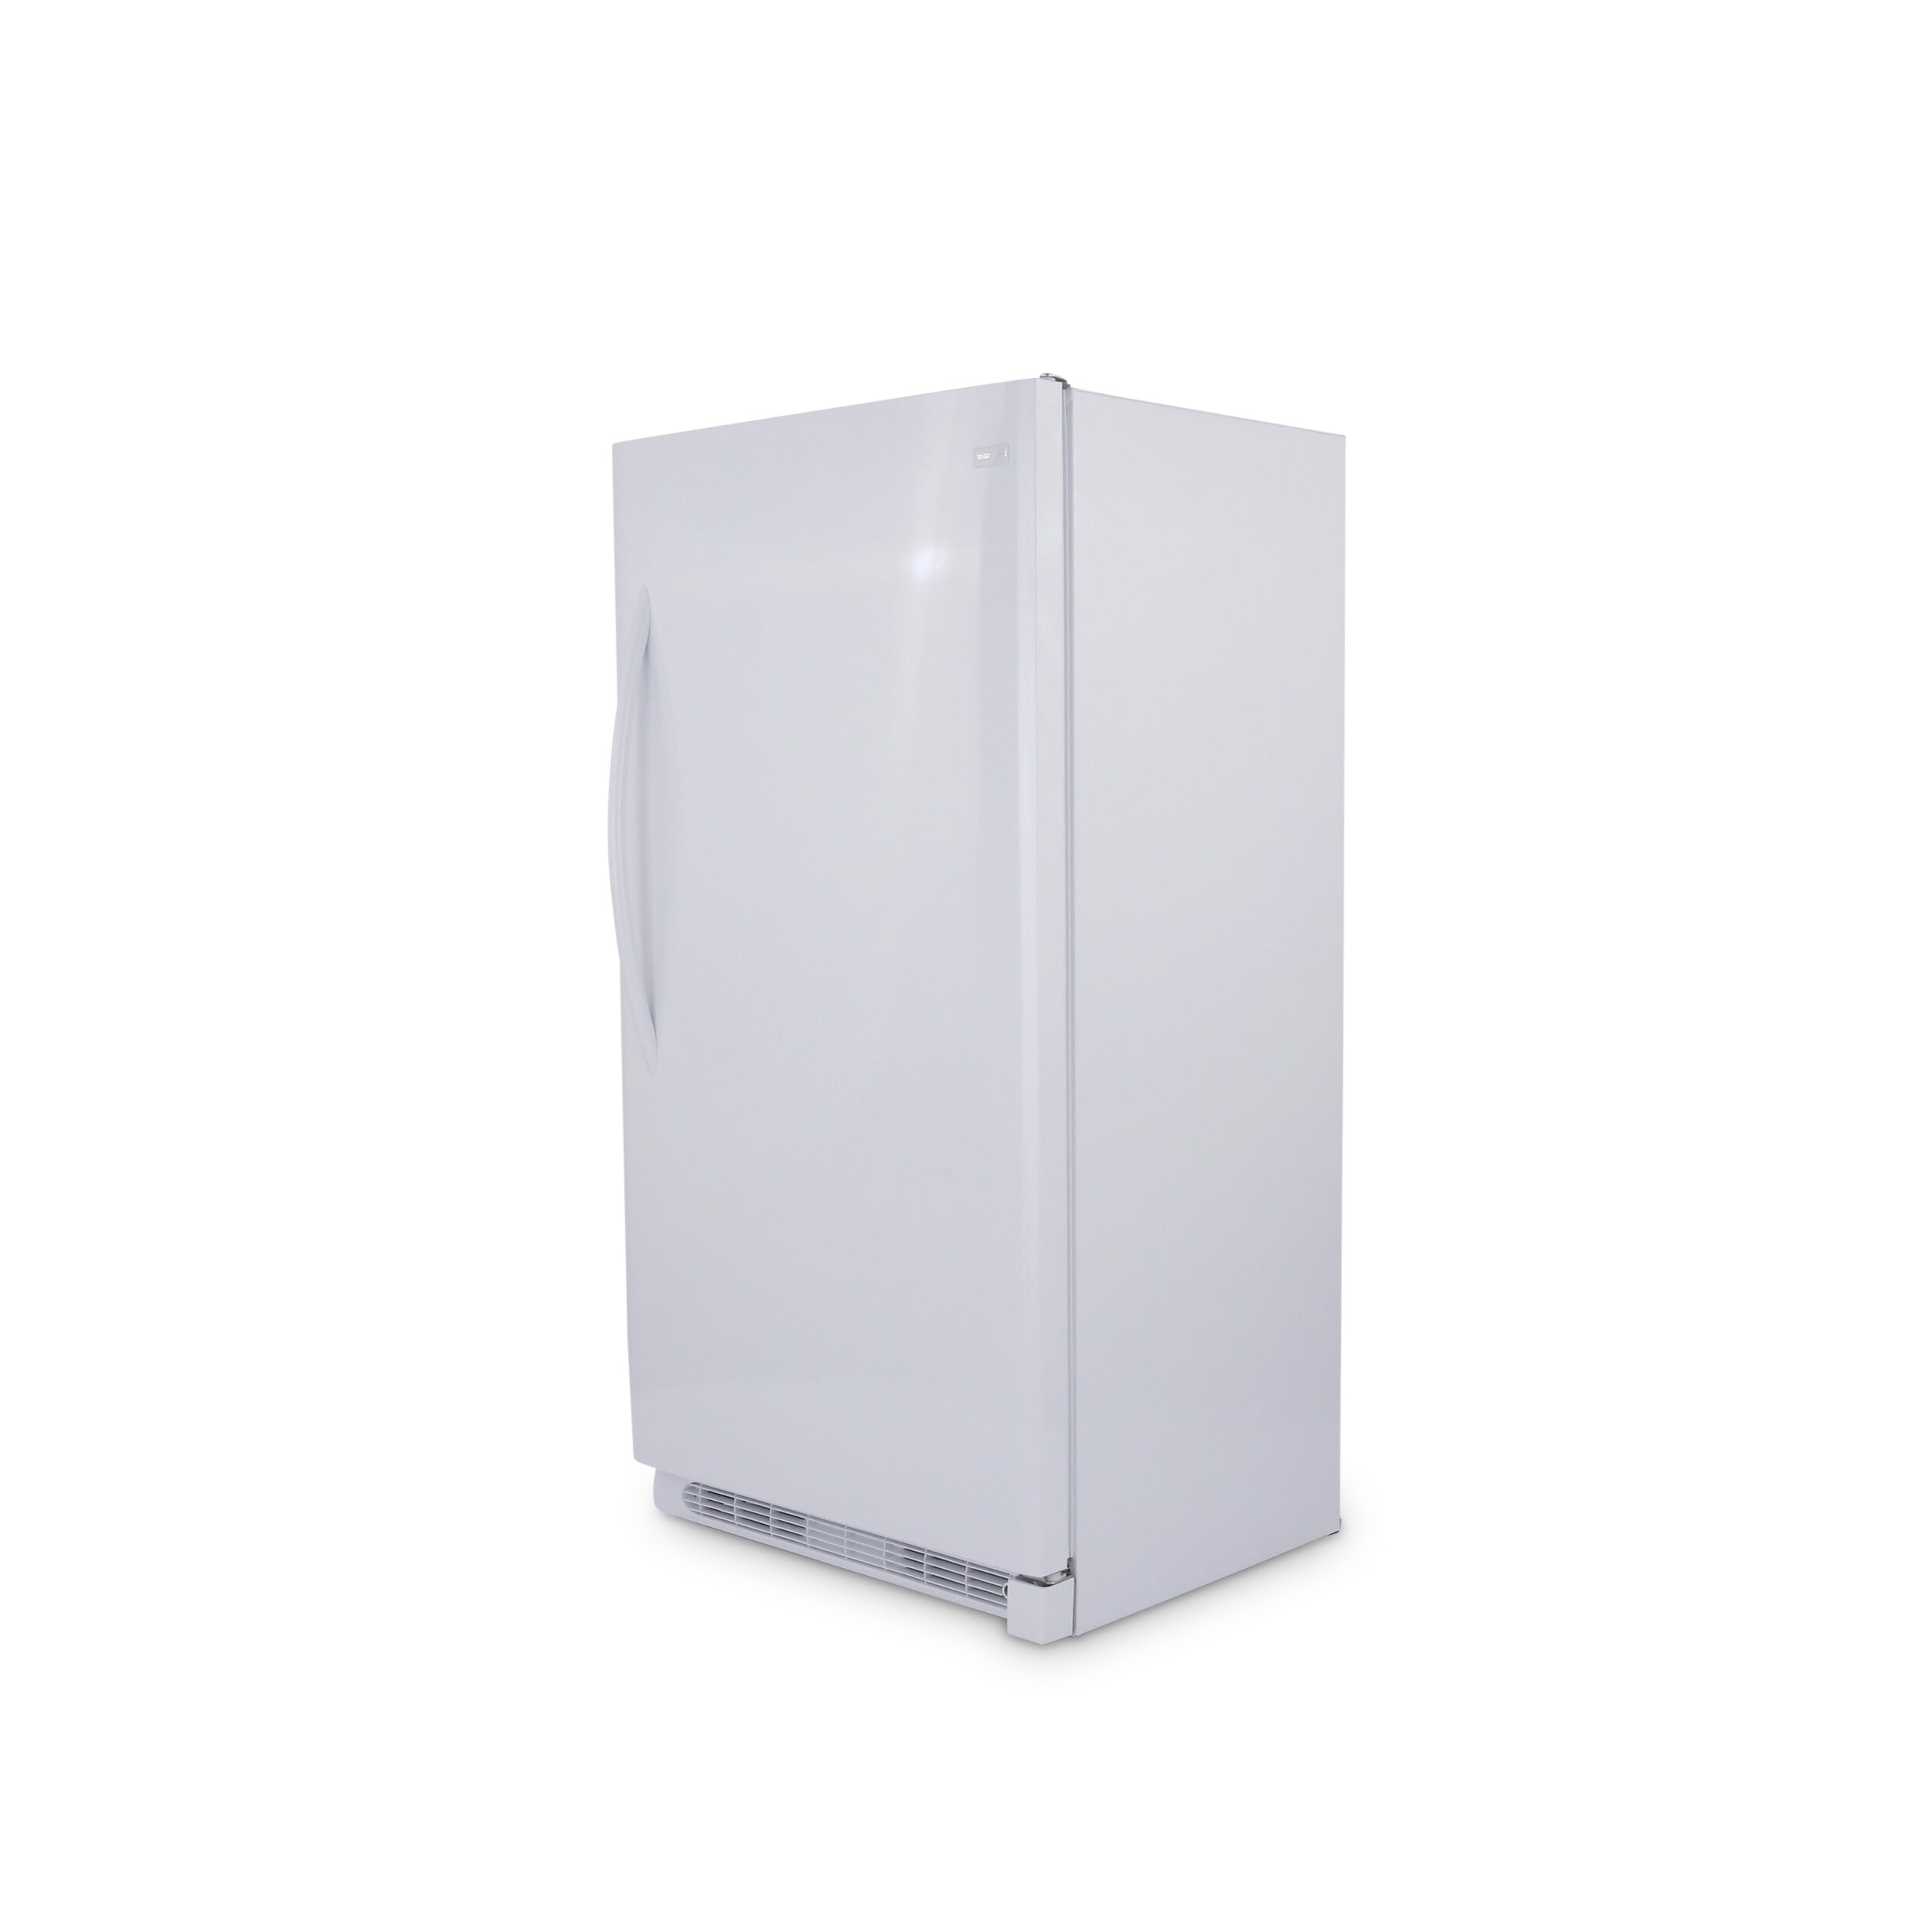 220-240 Volt Frigidaire by Electrolux Domestic Freezers Domestic Upright  FreezersFrigidaire by Electrolux FFFH20F3VW